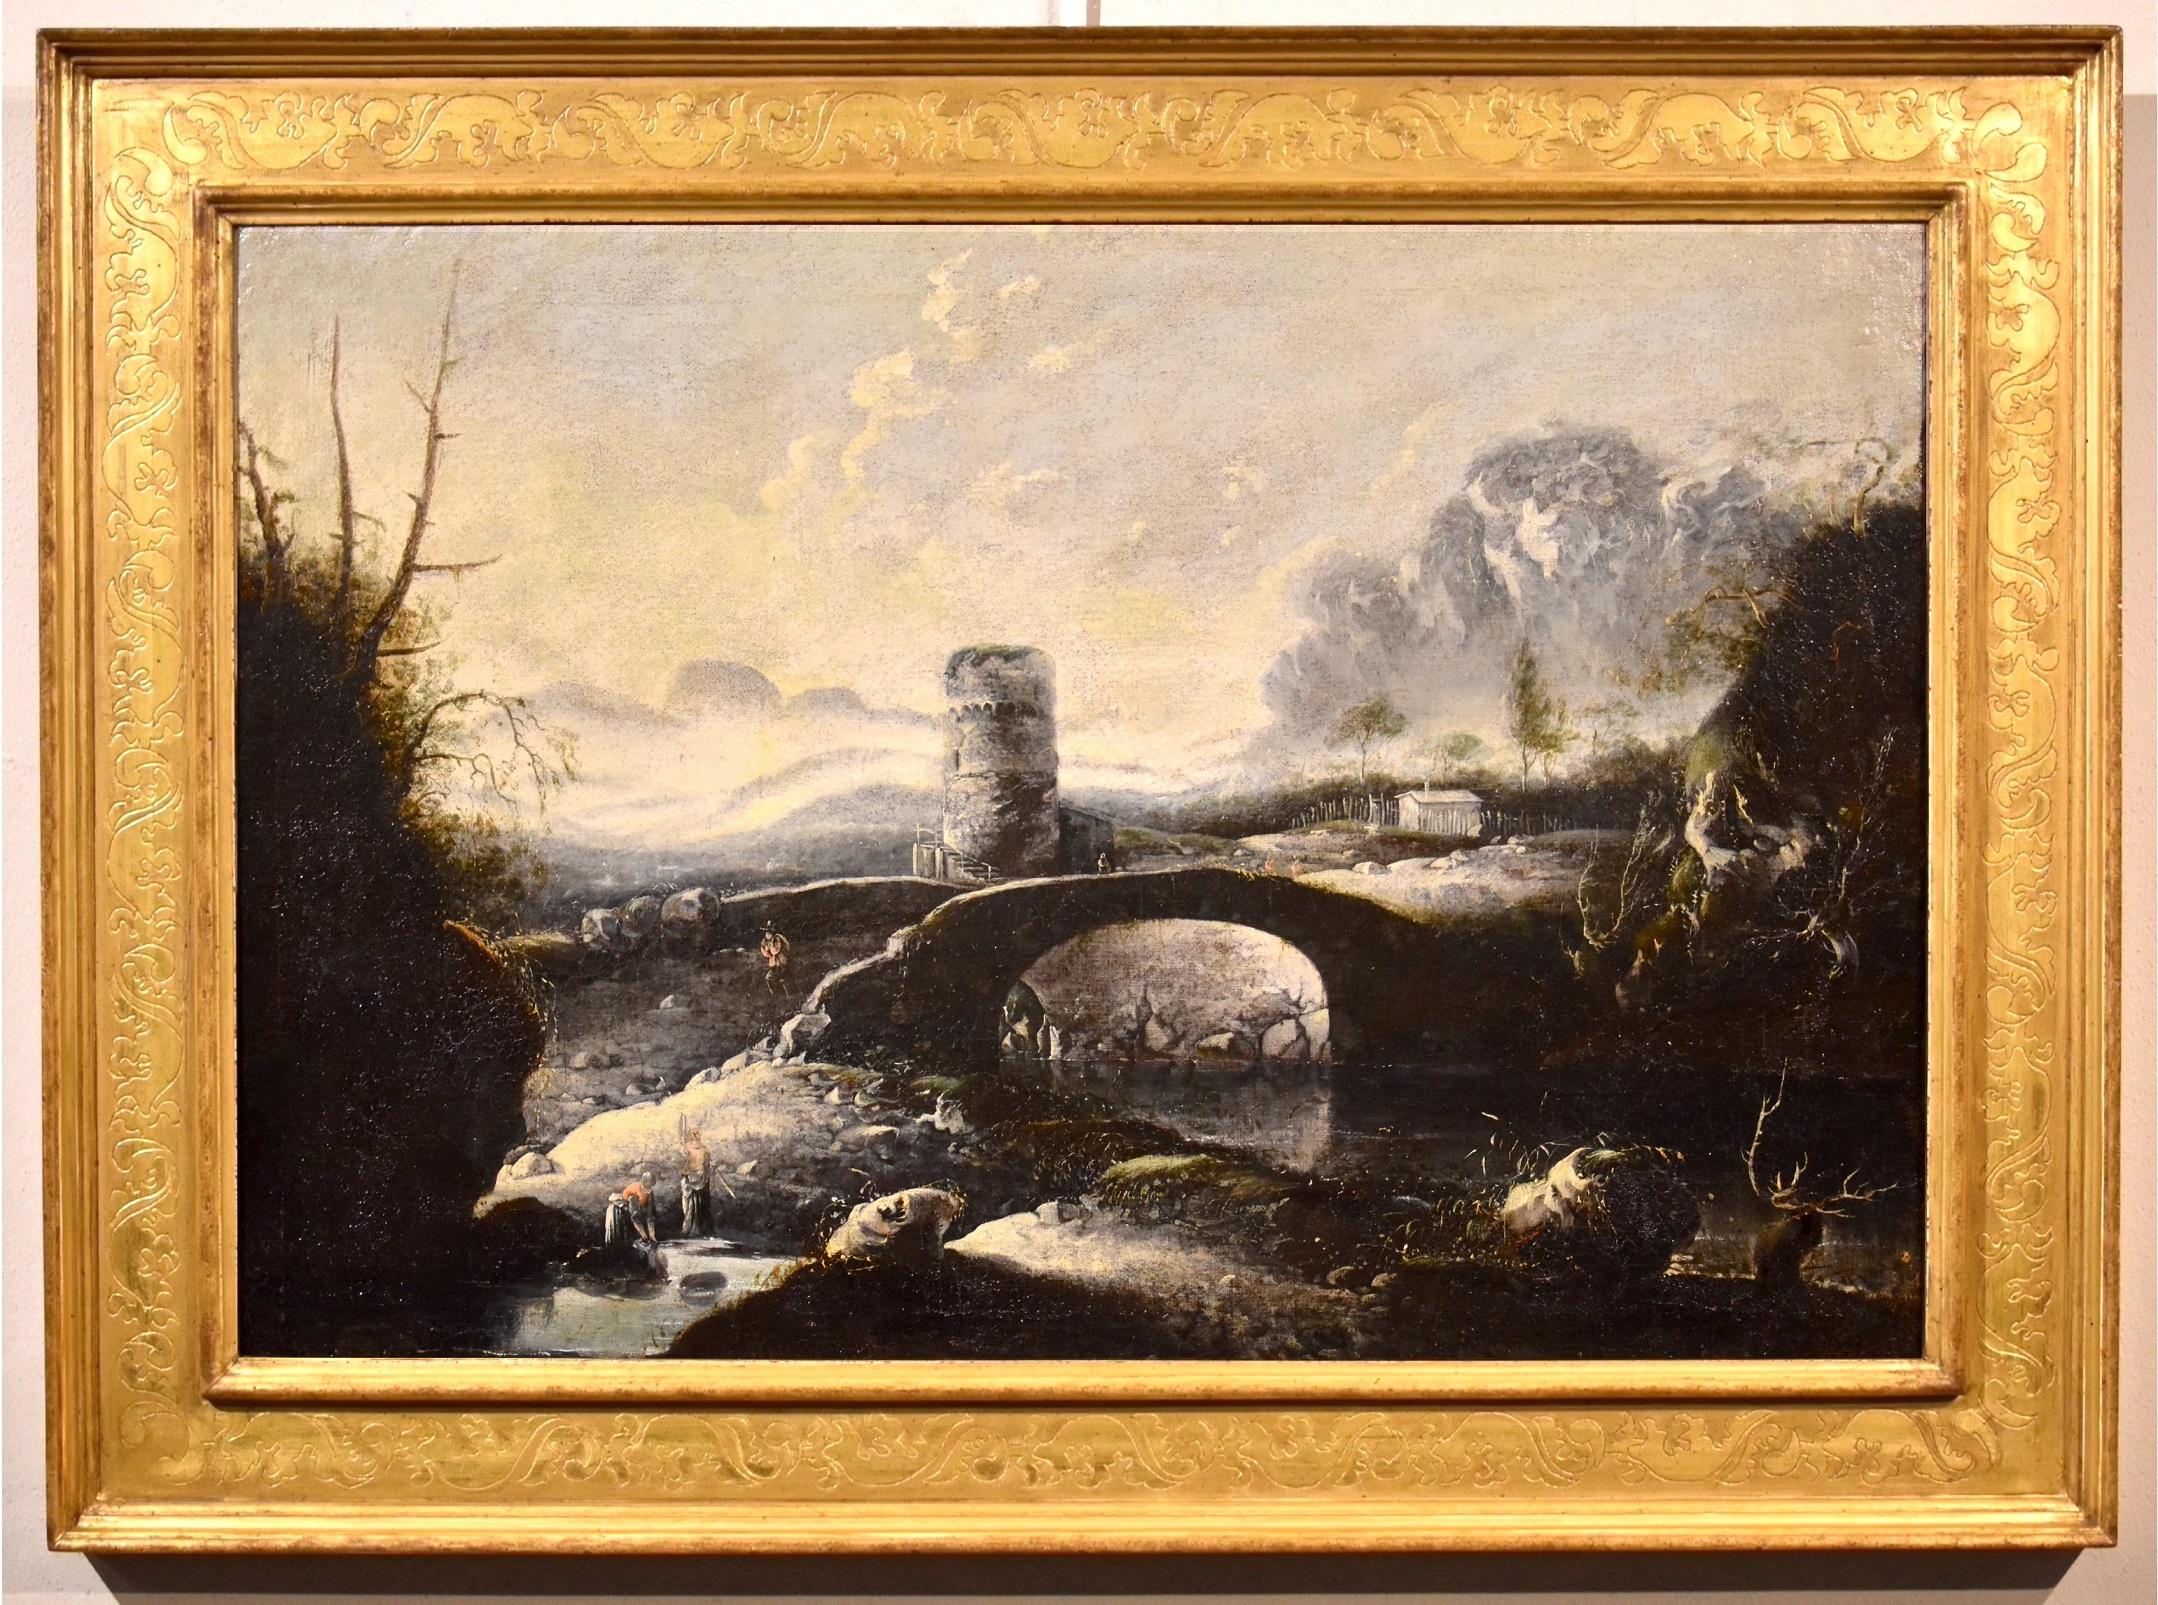 Winter Landscape De Jode Paint Oil on canvas Old master 17th Century Flemish Art